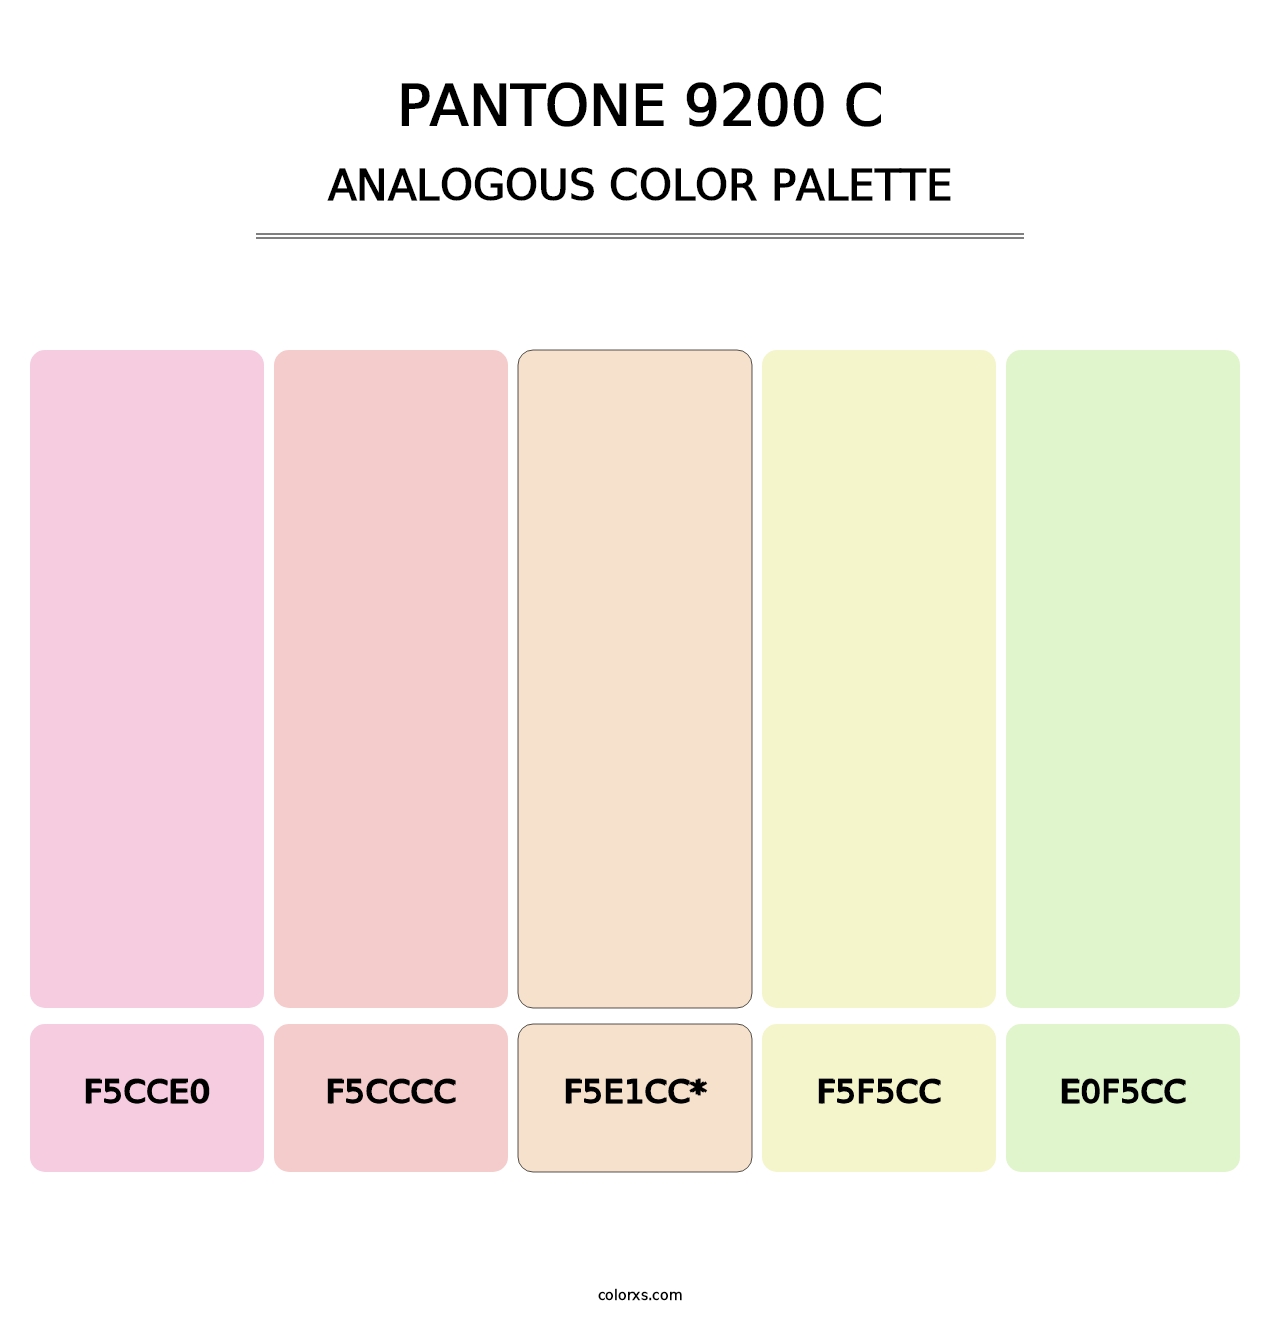 PANTONE 9200 C - Analogous Color Palette